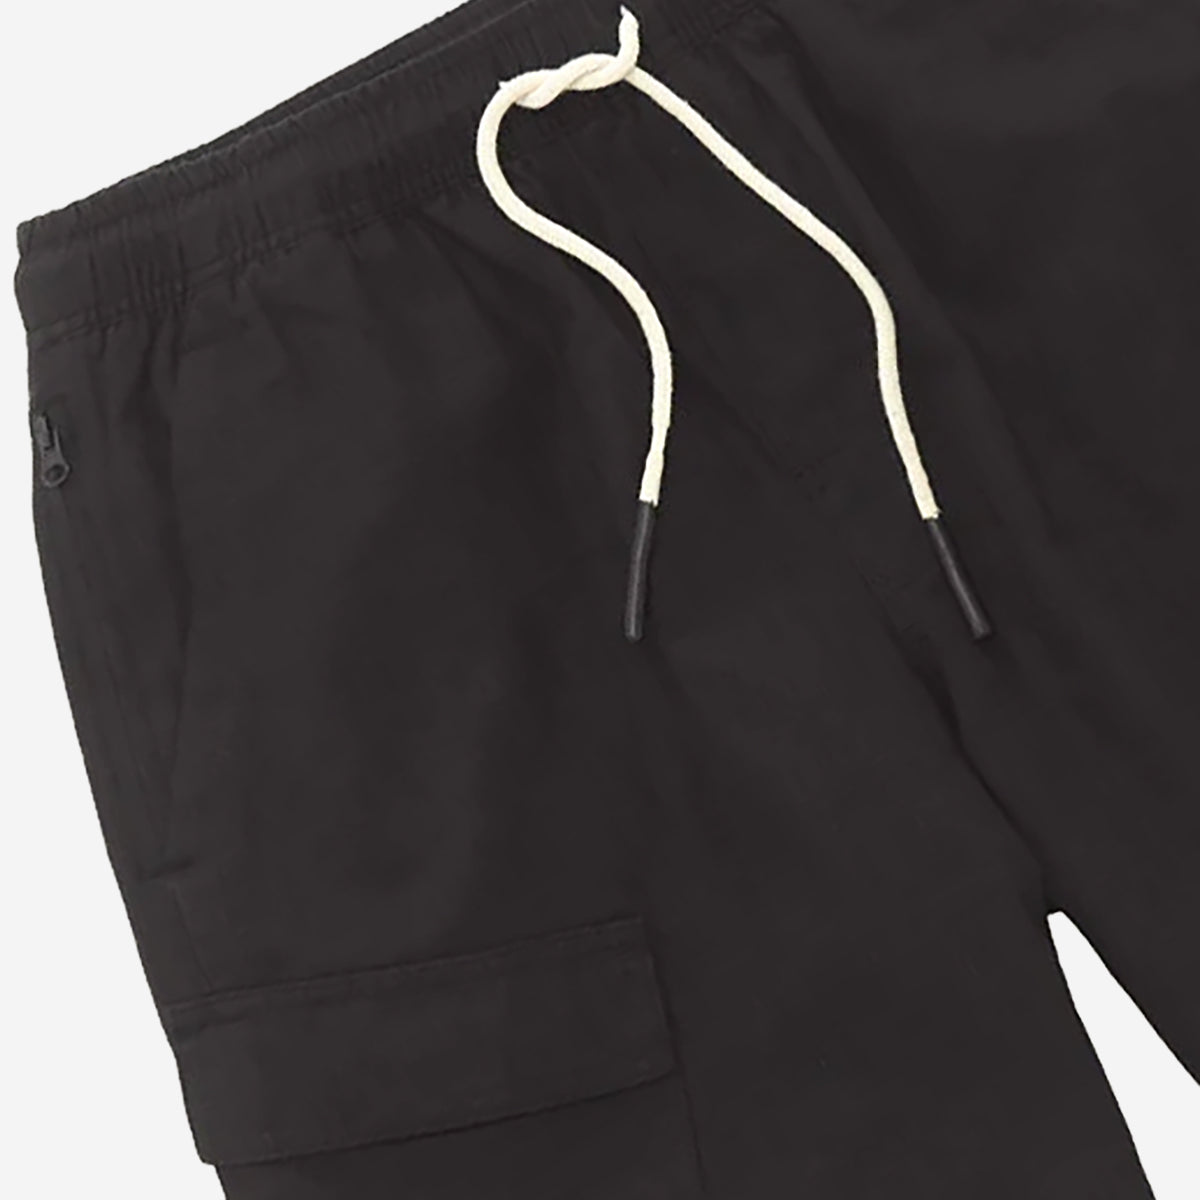 Cargo Linen Shorts - Black